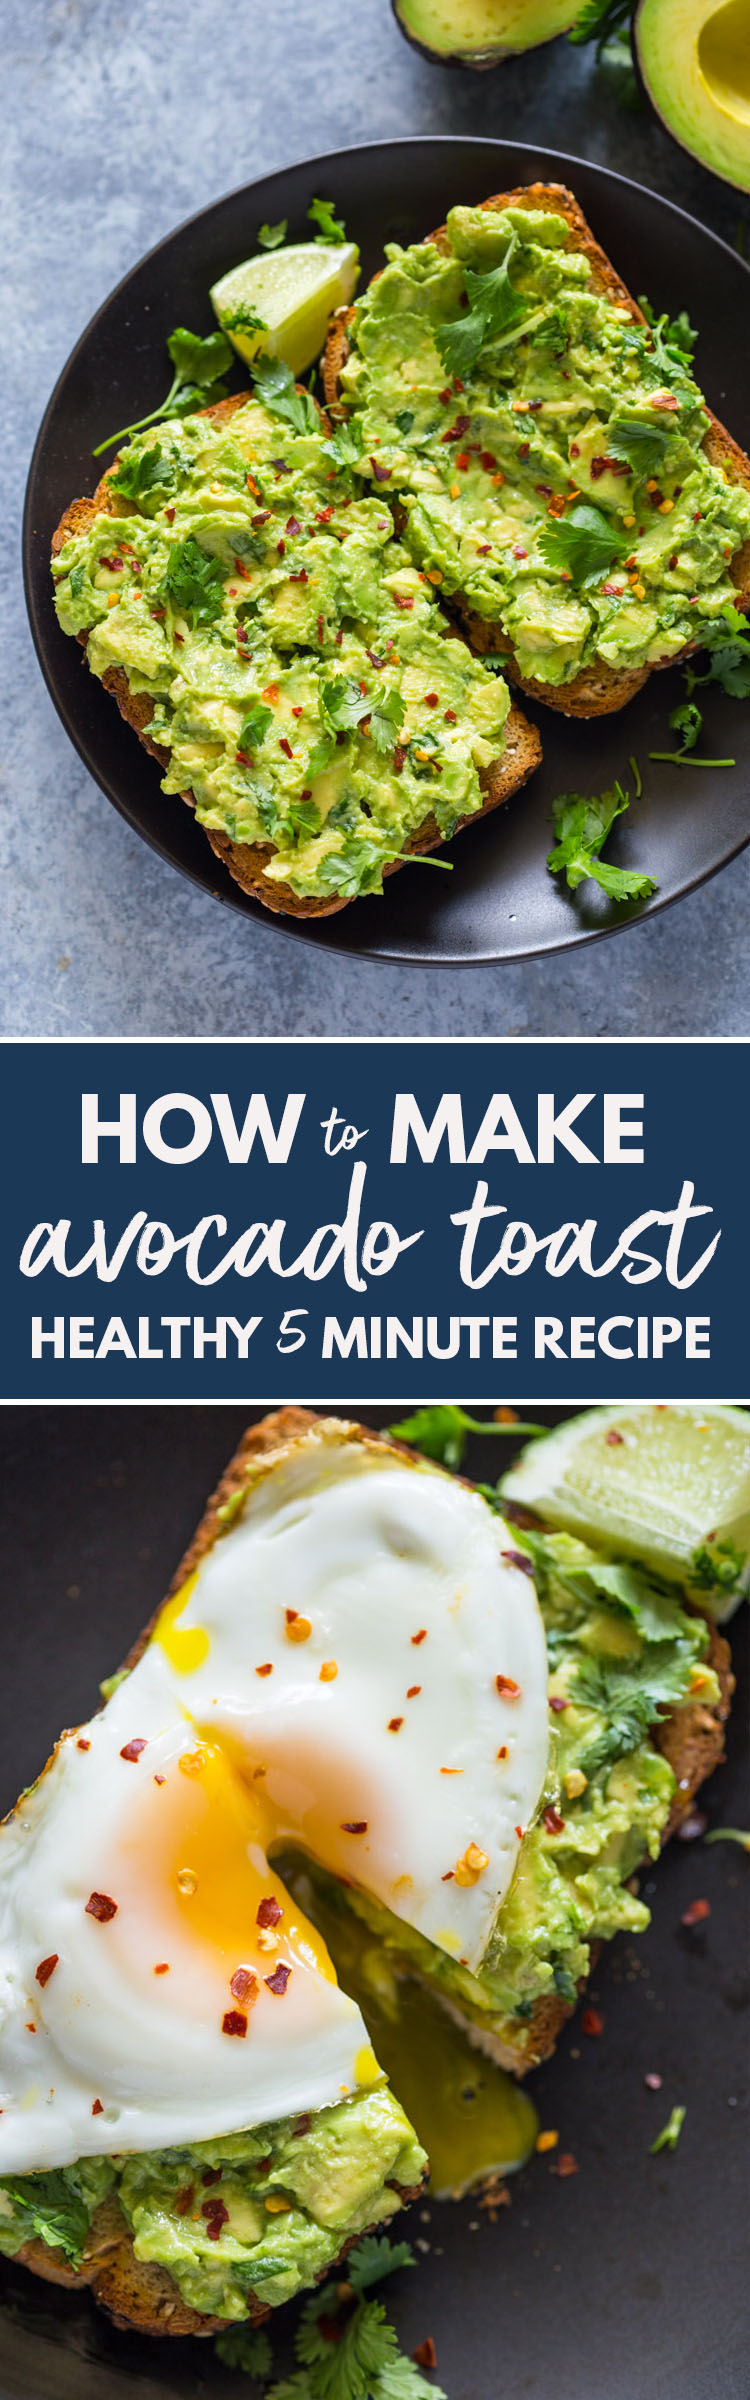 Healthy 5 Minute Avocado Toast